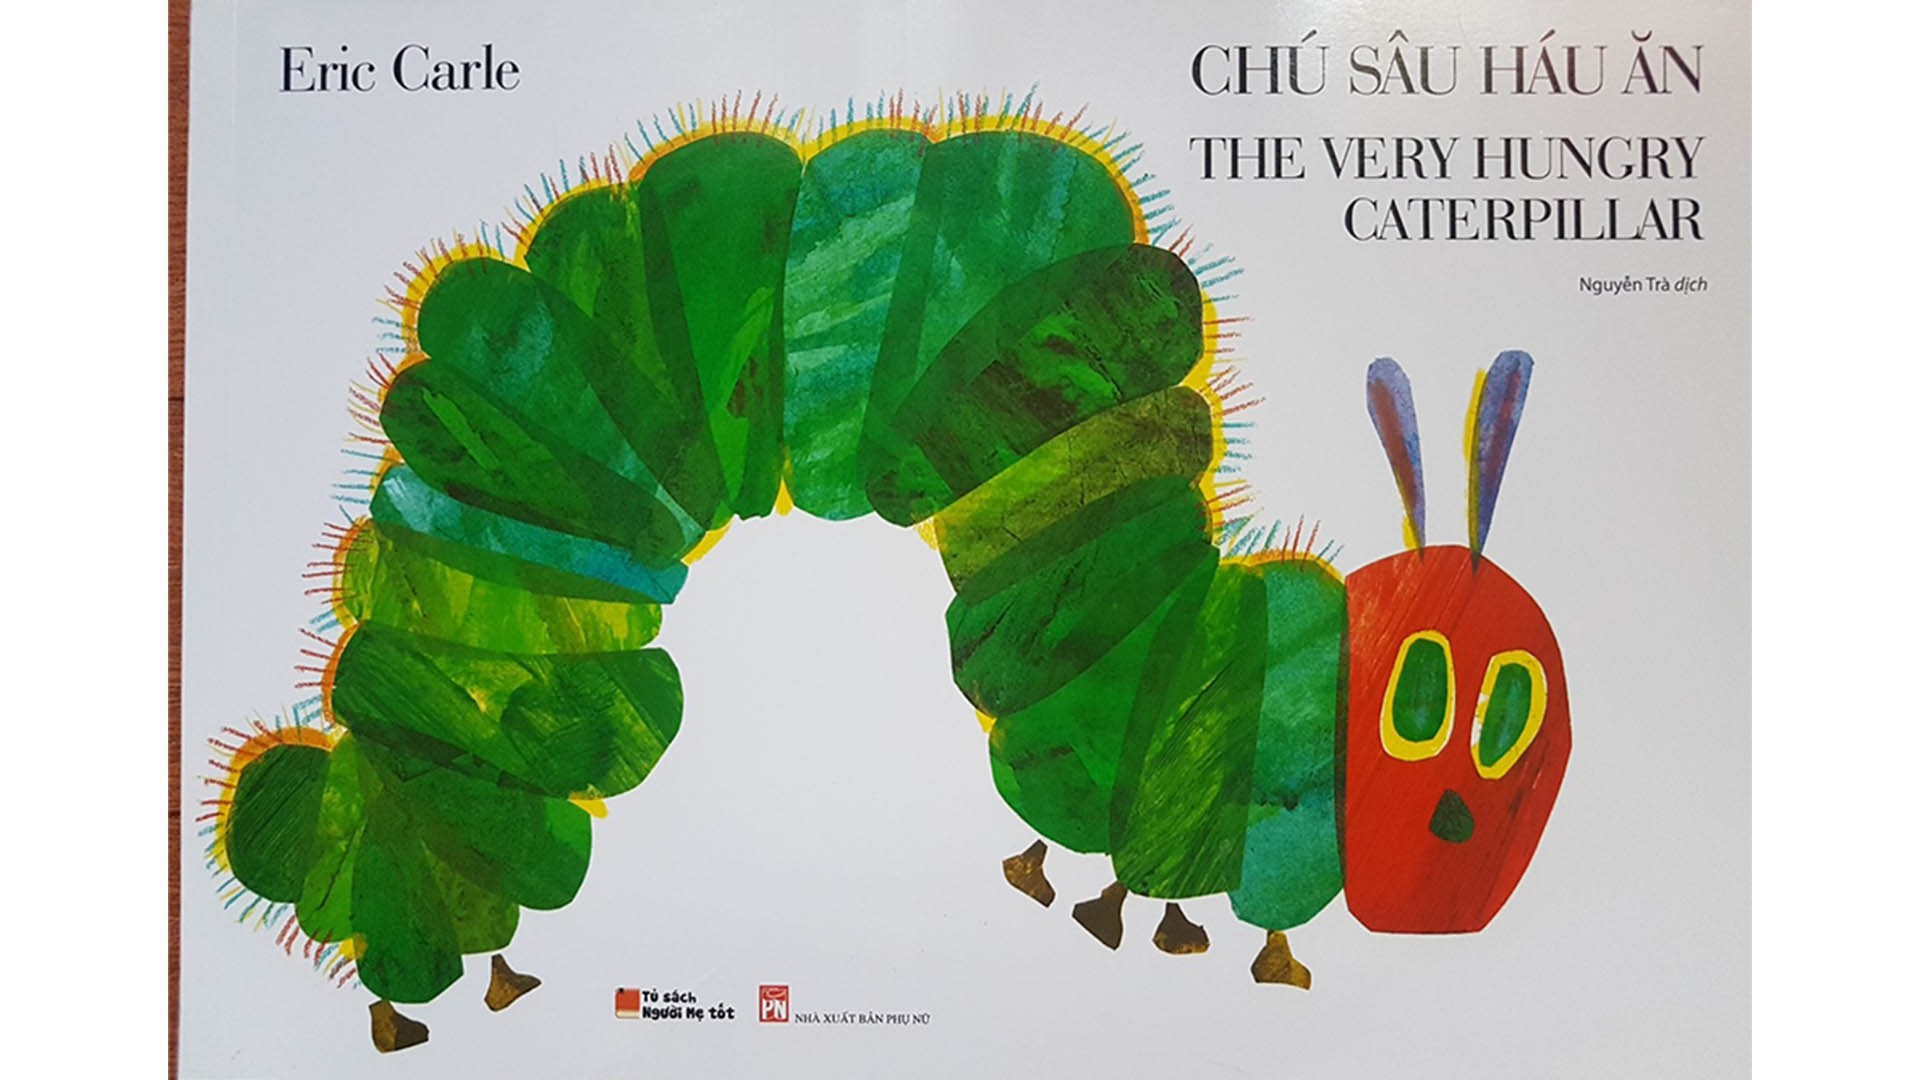 Sách tiếng Anh hay cho trẻ em: “Chú sâu háu ăn” – quyển sách đục lỗ đi khắp năm châu